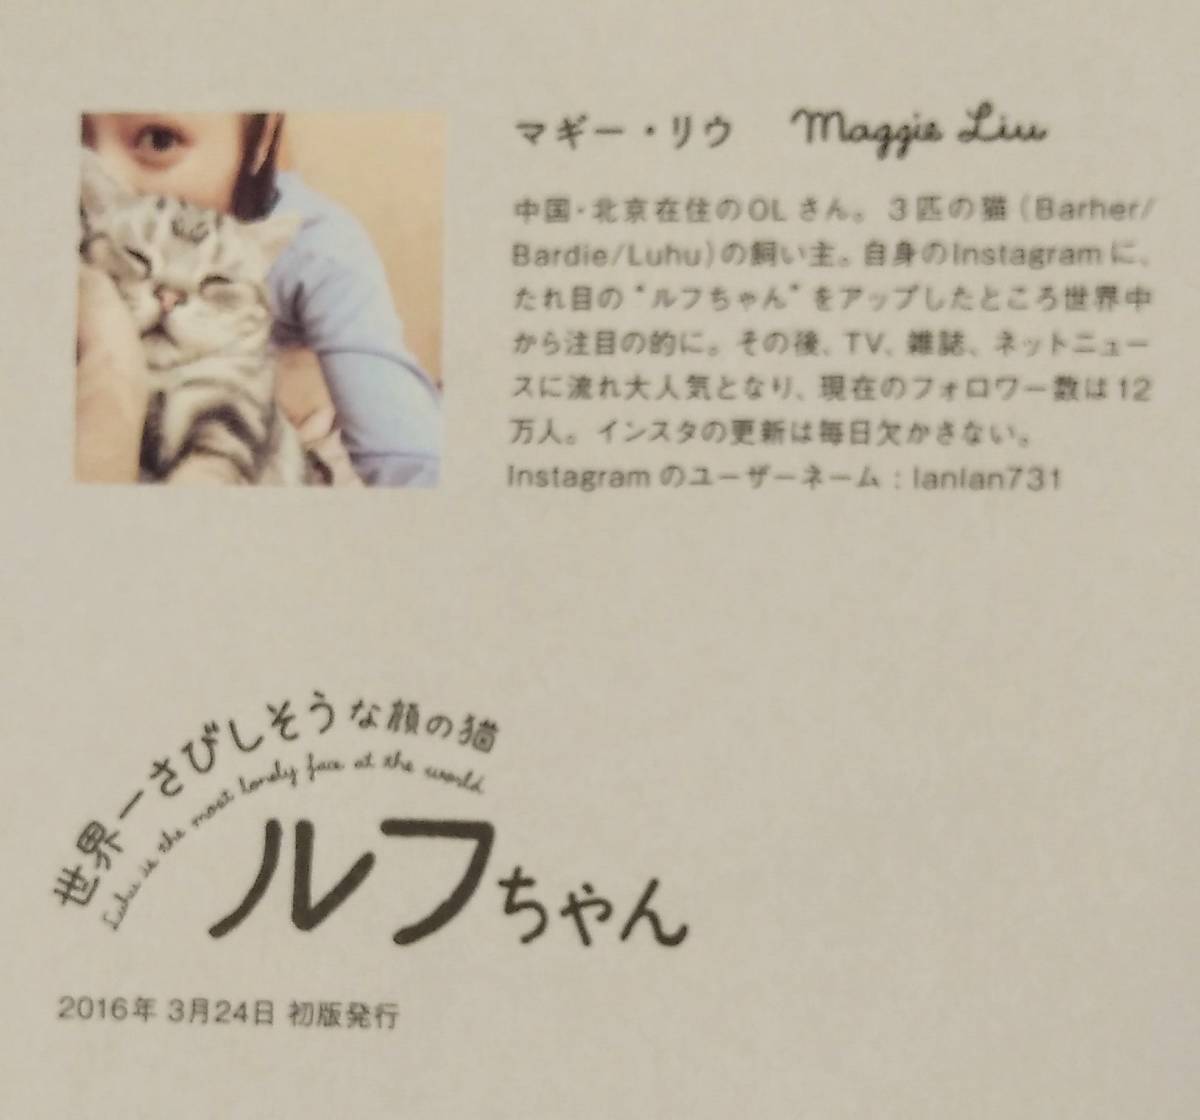 【世界一さびしそうな顔の猫 ルフちゃん】◆著者:マギー・リウ ◆2016年 3月24日 初版発行 ◆タレ目猫 ルフ ◆アメリカンショートヘア_画像10